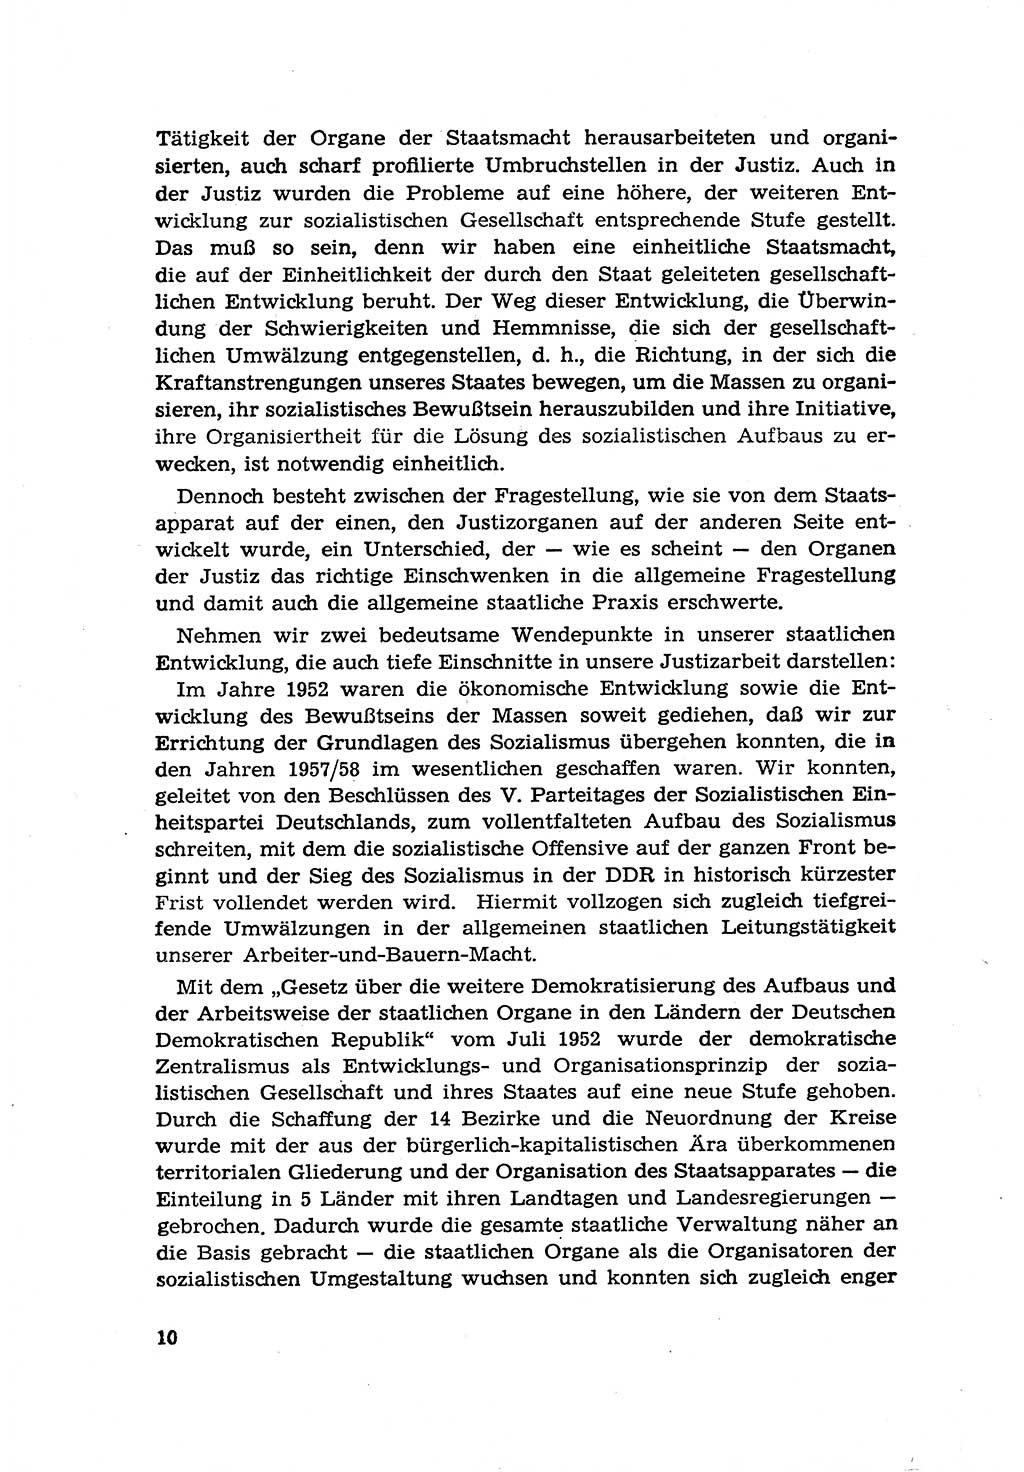 Zur Entwicklung des sozialistischen Strafrechts der Deutschen Demokratischen Republik (DDR) 1960, Seite 10 (Entw. soz. Strafr. DDR 1960, S. 10)